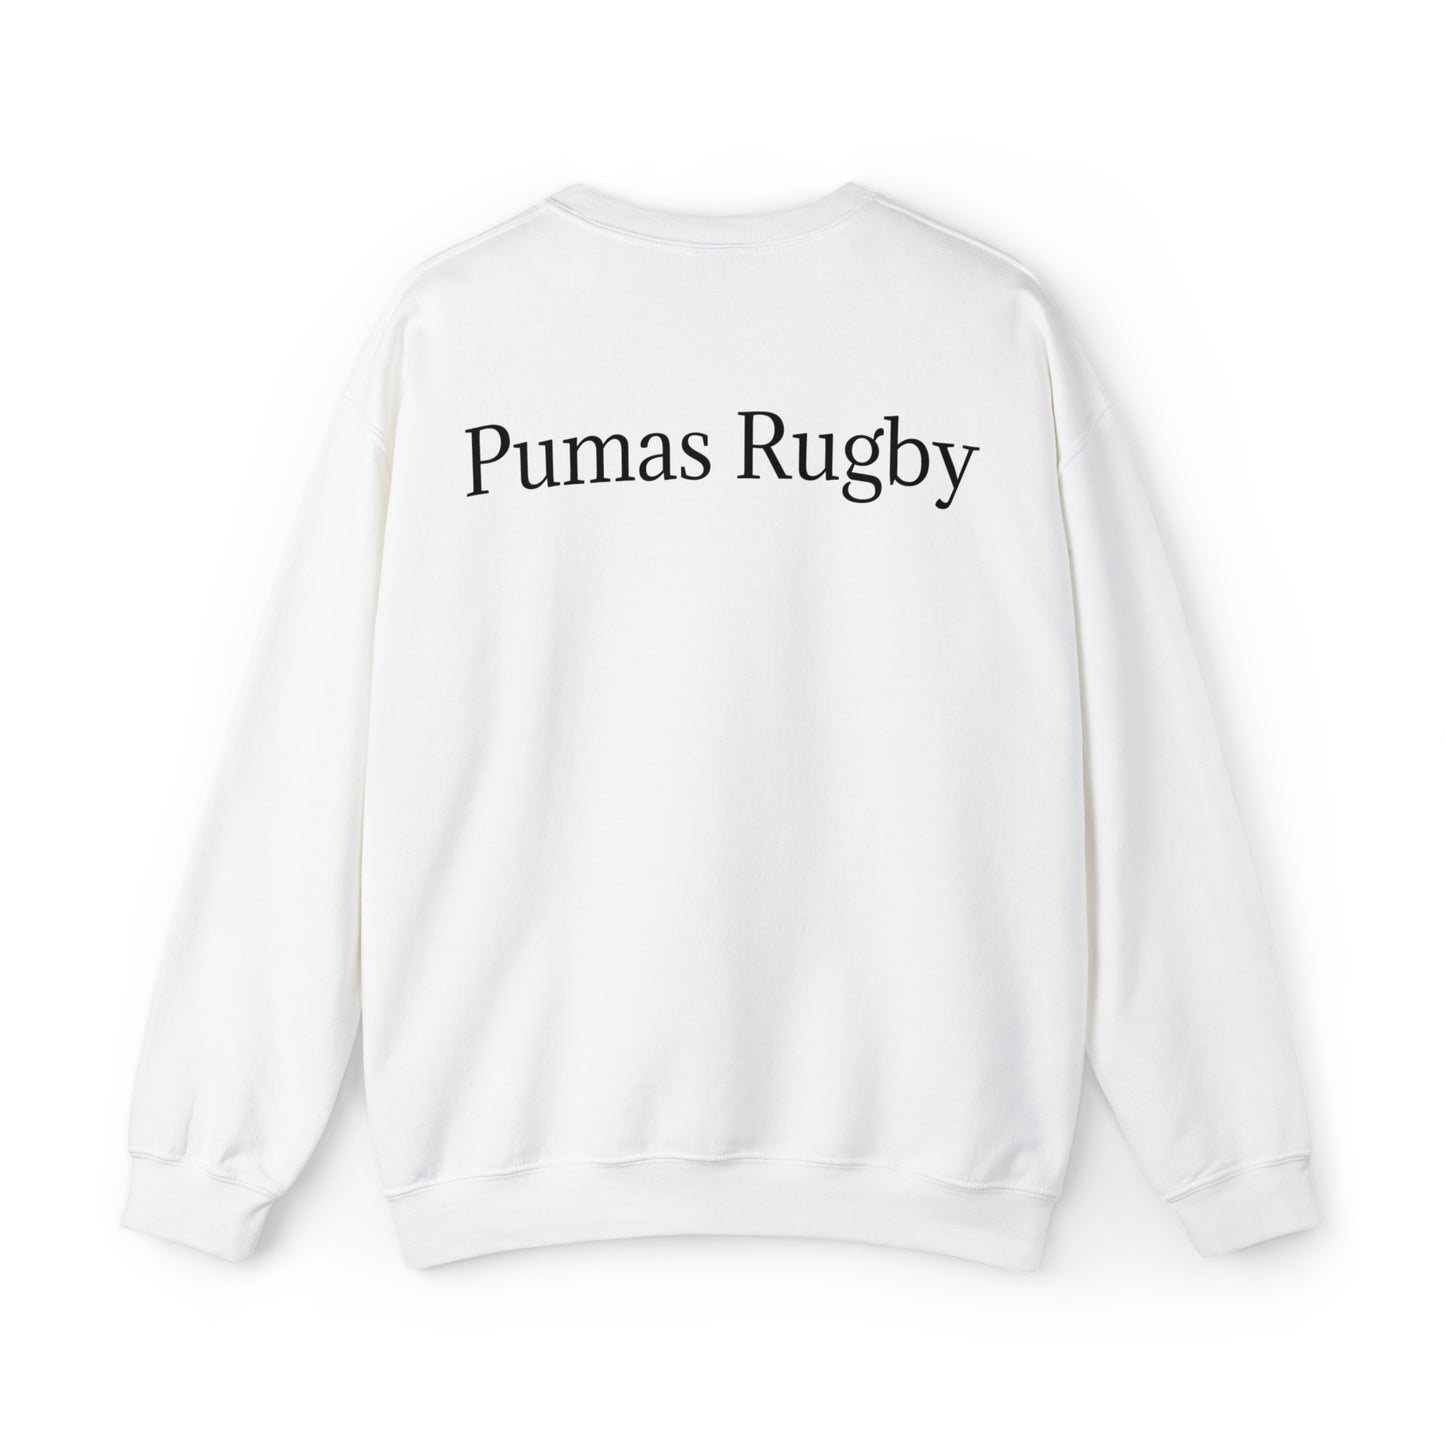 Ready Pumas - light sweatshirts